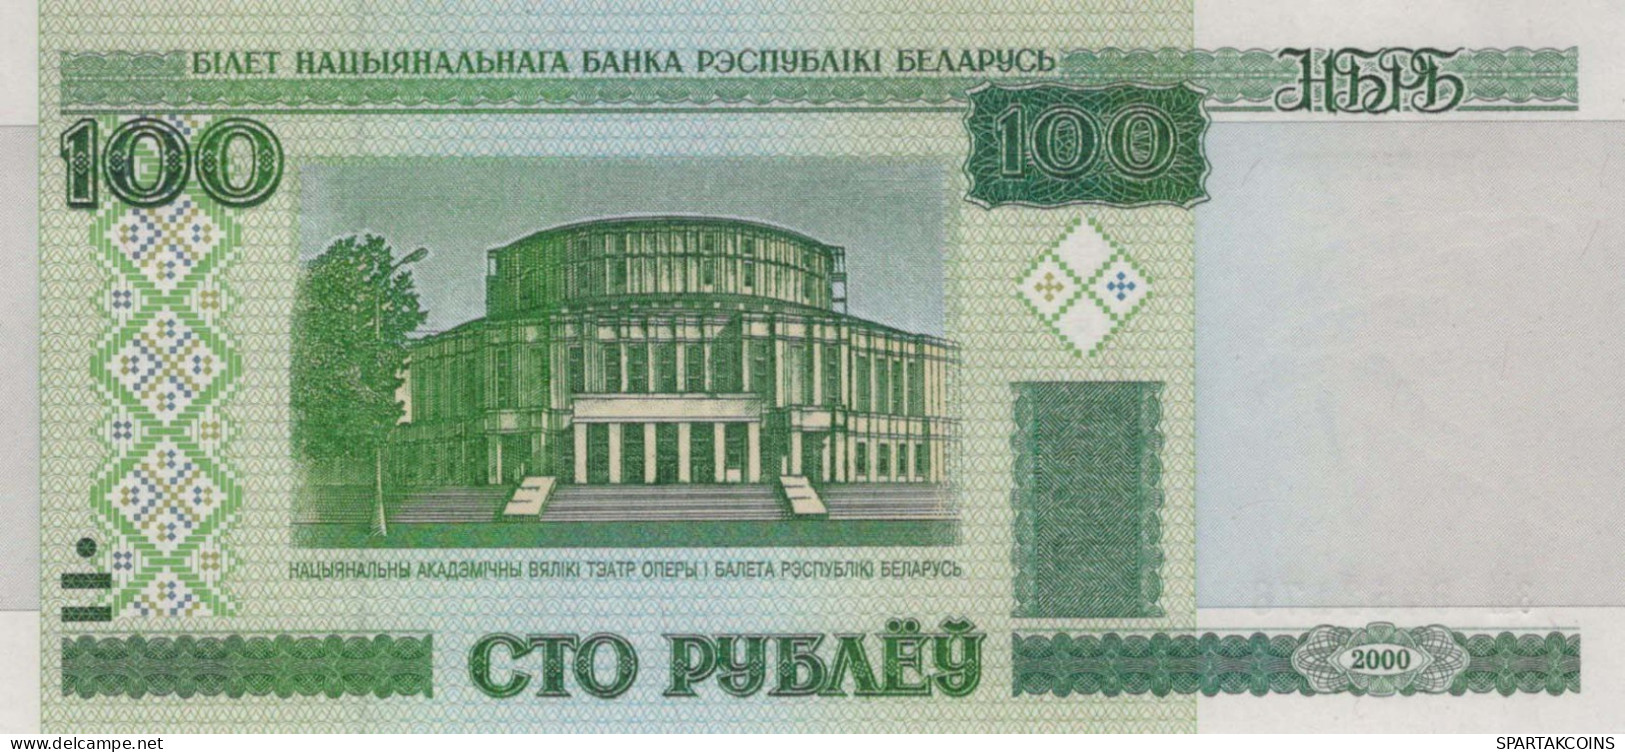 100 RUBLES 2000 BELARUS Papiergeld Banknote #PJ306 - [11] Lokale Uitgaven